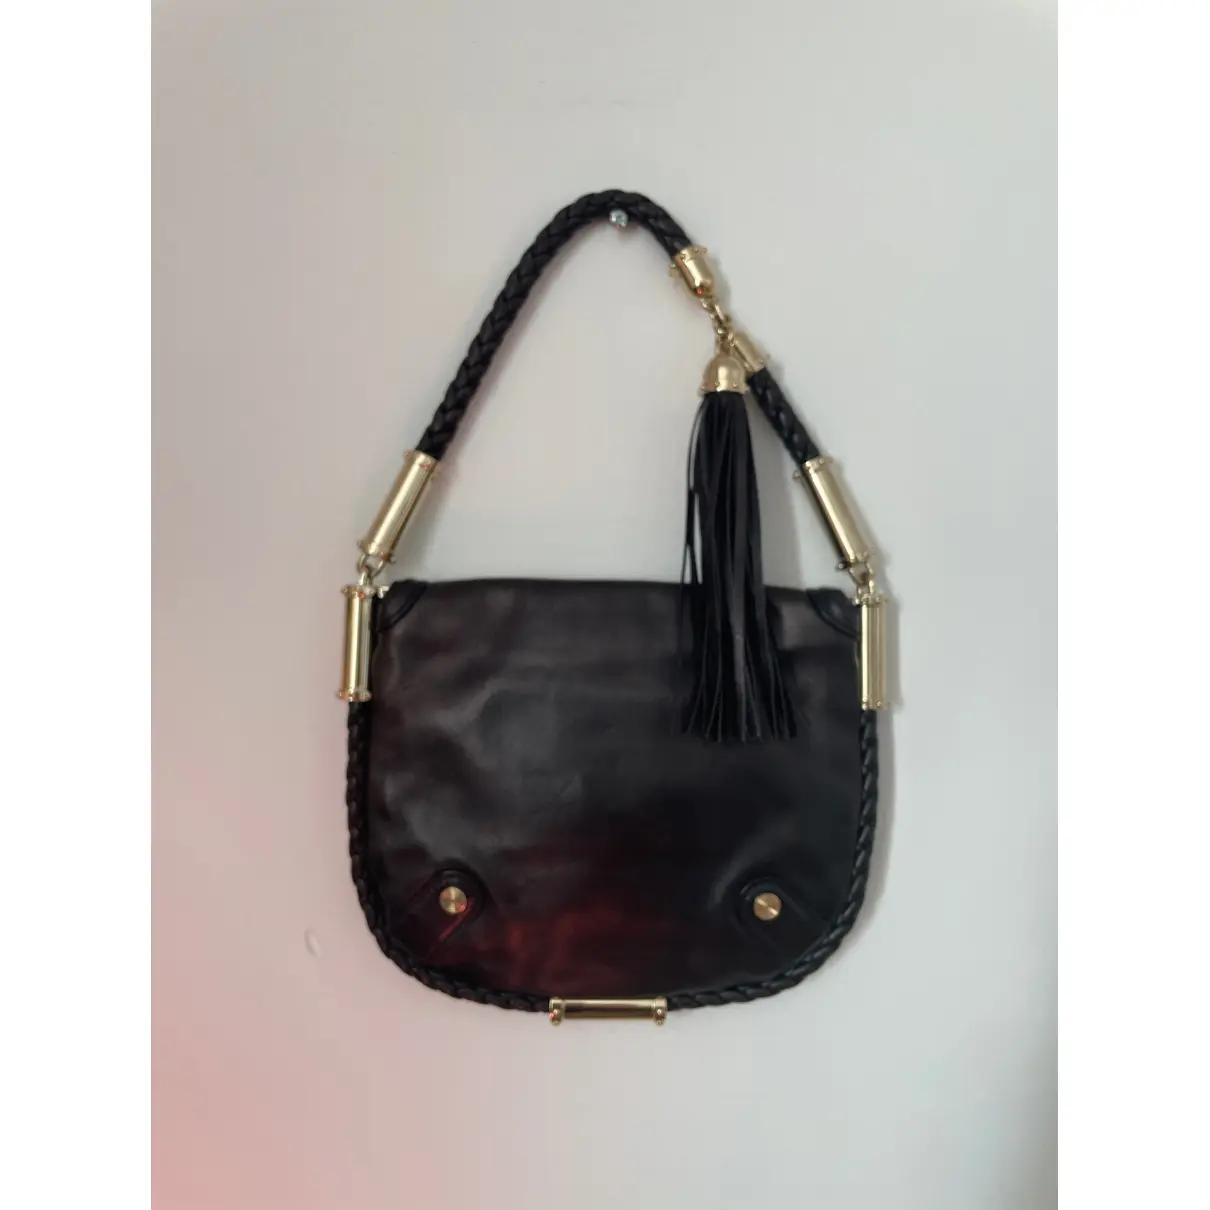 Buy Gucci Britt leather crossbody bag online